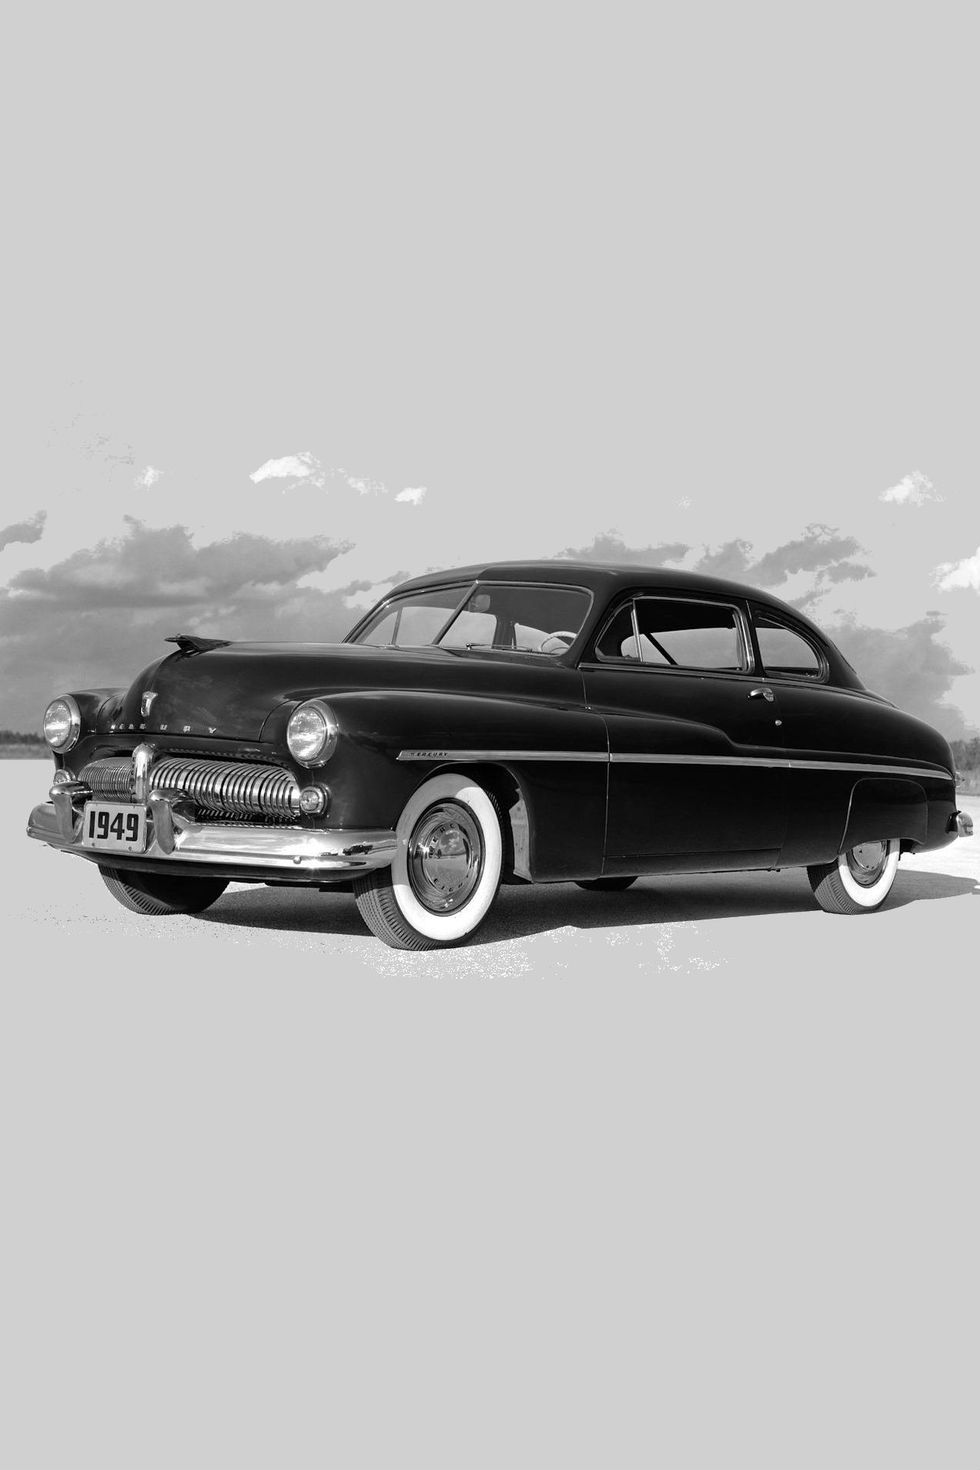 世界の名車100年の歴史 第3回 1948年 1957年 自分が生まれた年の名車を知ろう